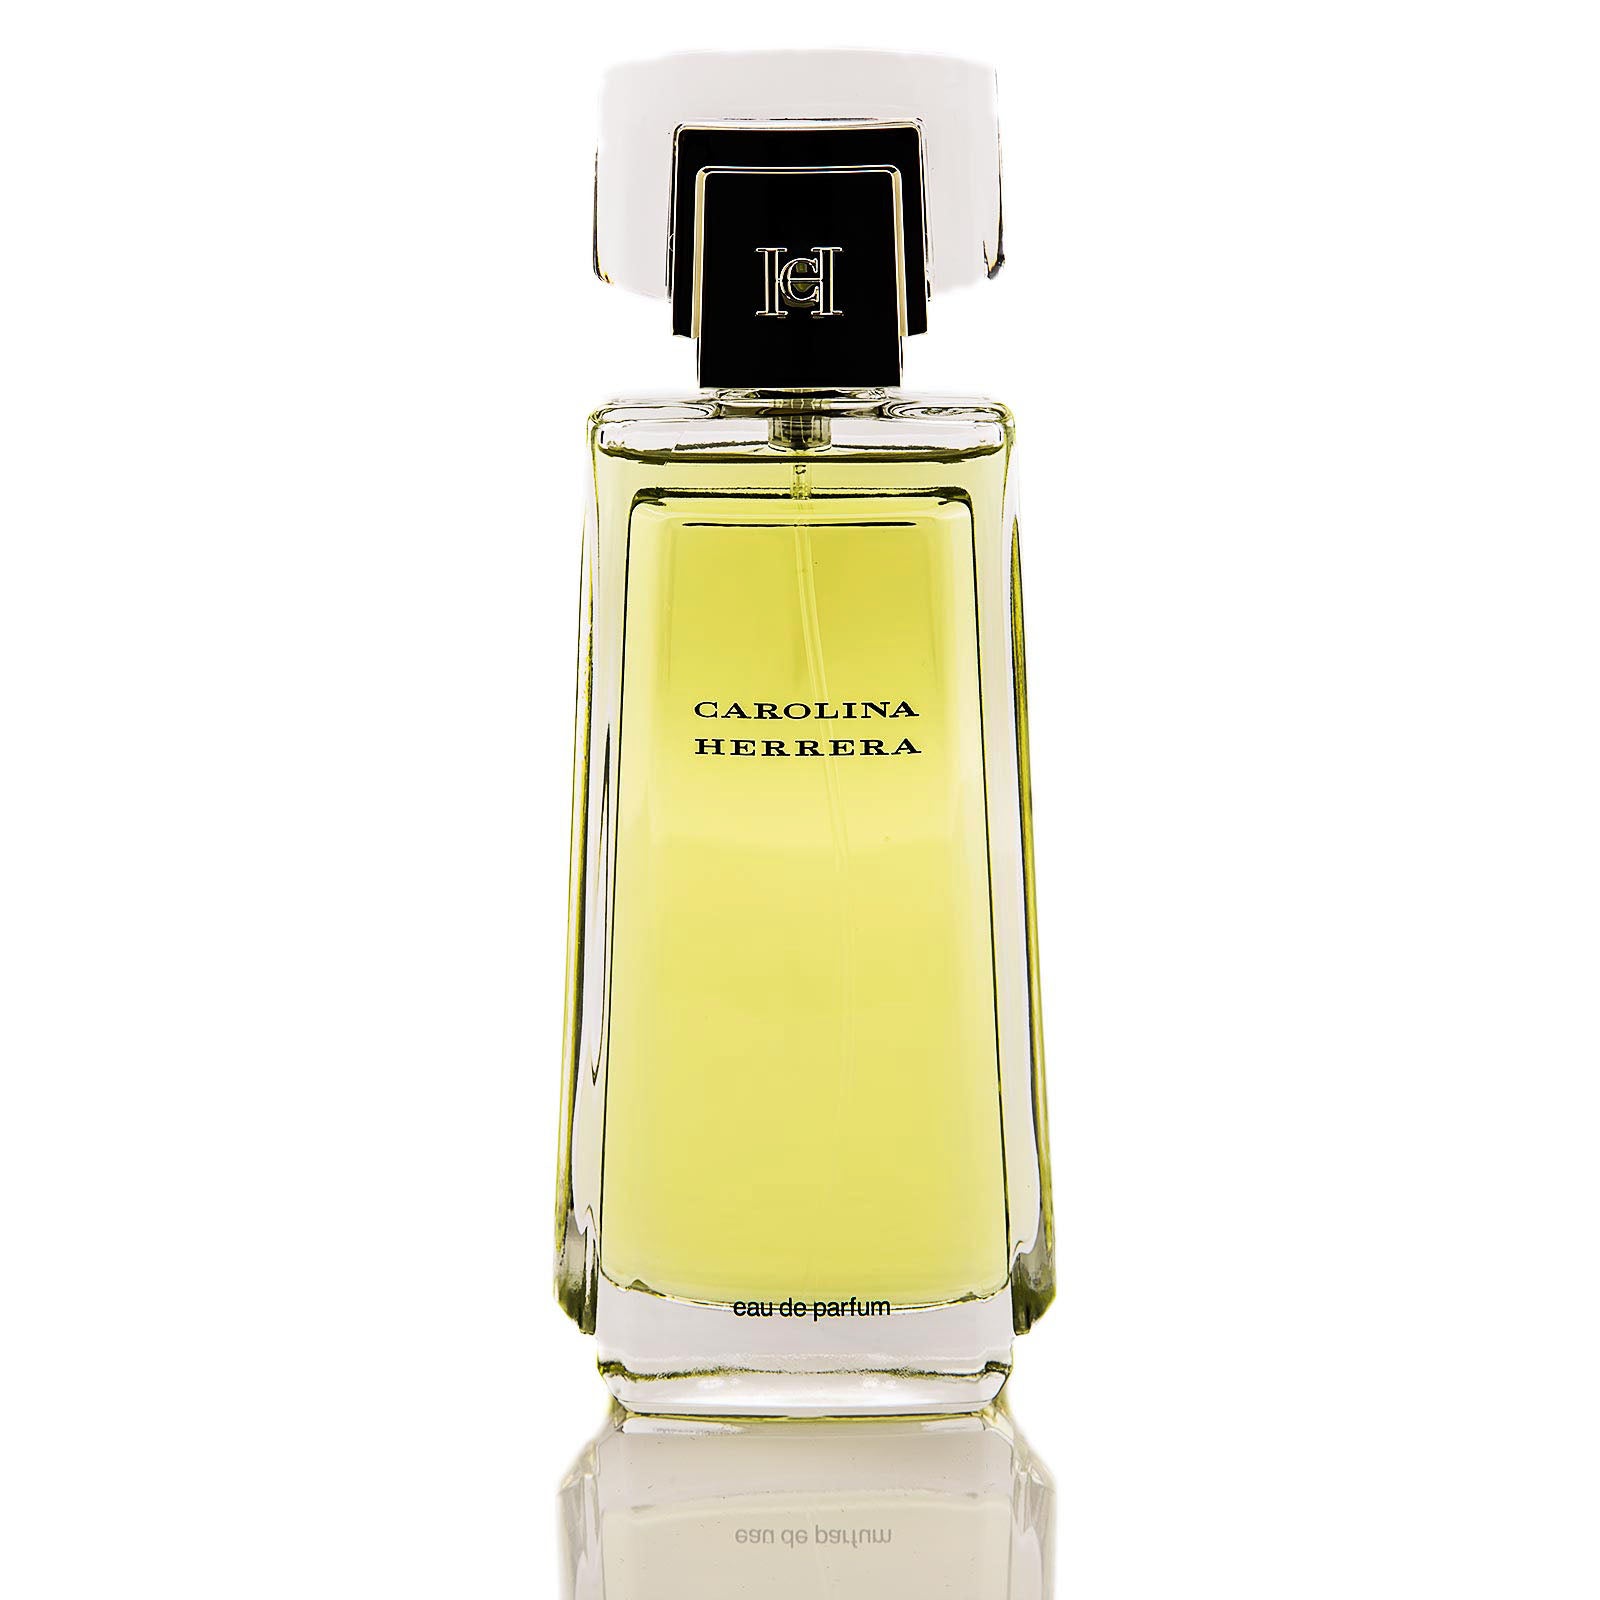 Carolina Herrera Women's Classic Natural Eau de Perfume Spray, 3.4 oz (100 ml)